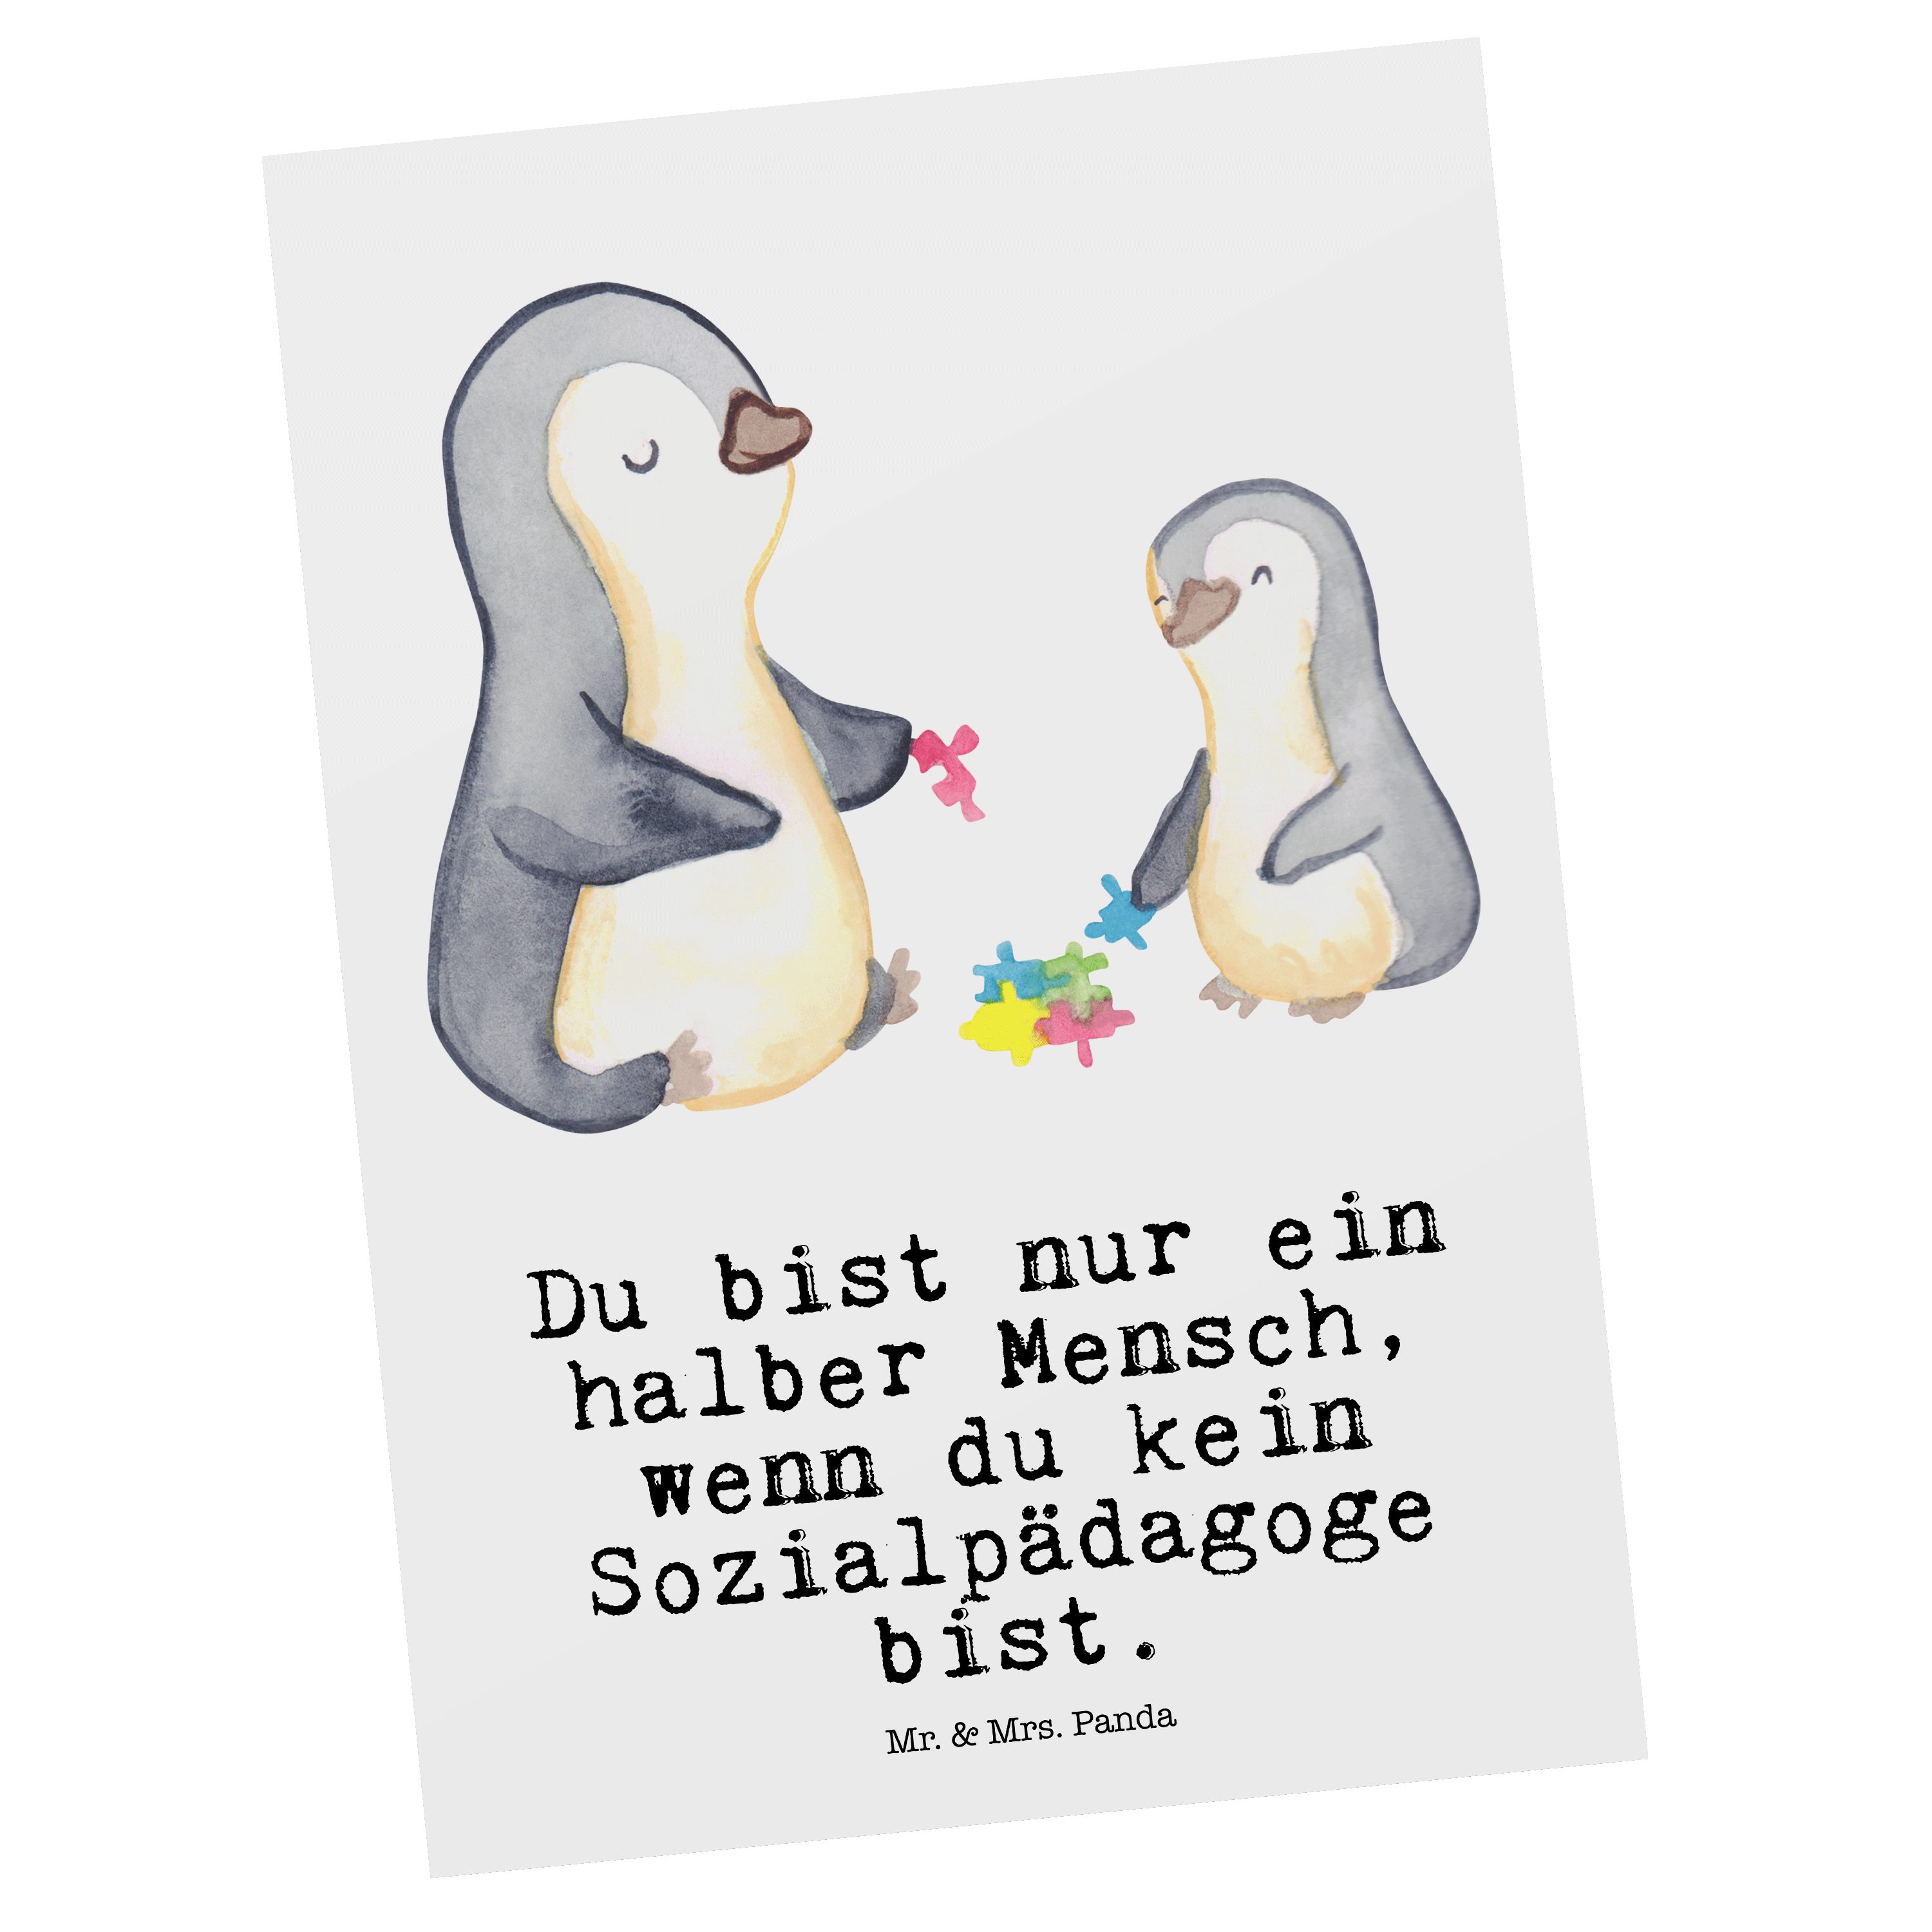 Mr. & Mrs. Panda Postkarte Sozialpädagoge mit Herz - Weiß - Geschenk, Einladungskarte, Beruf, Ge